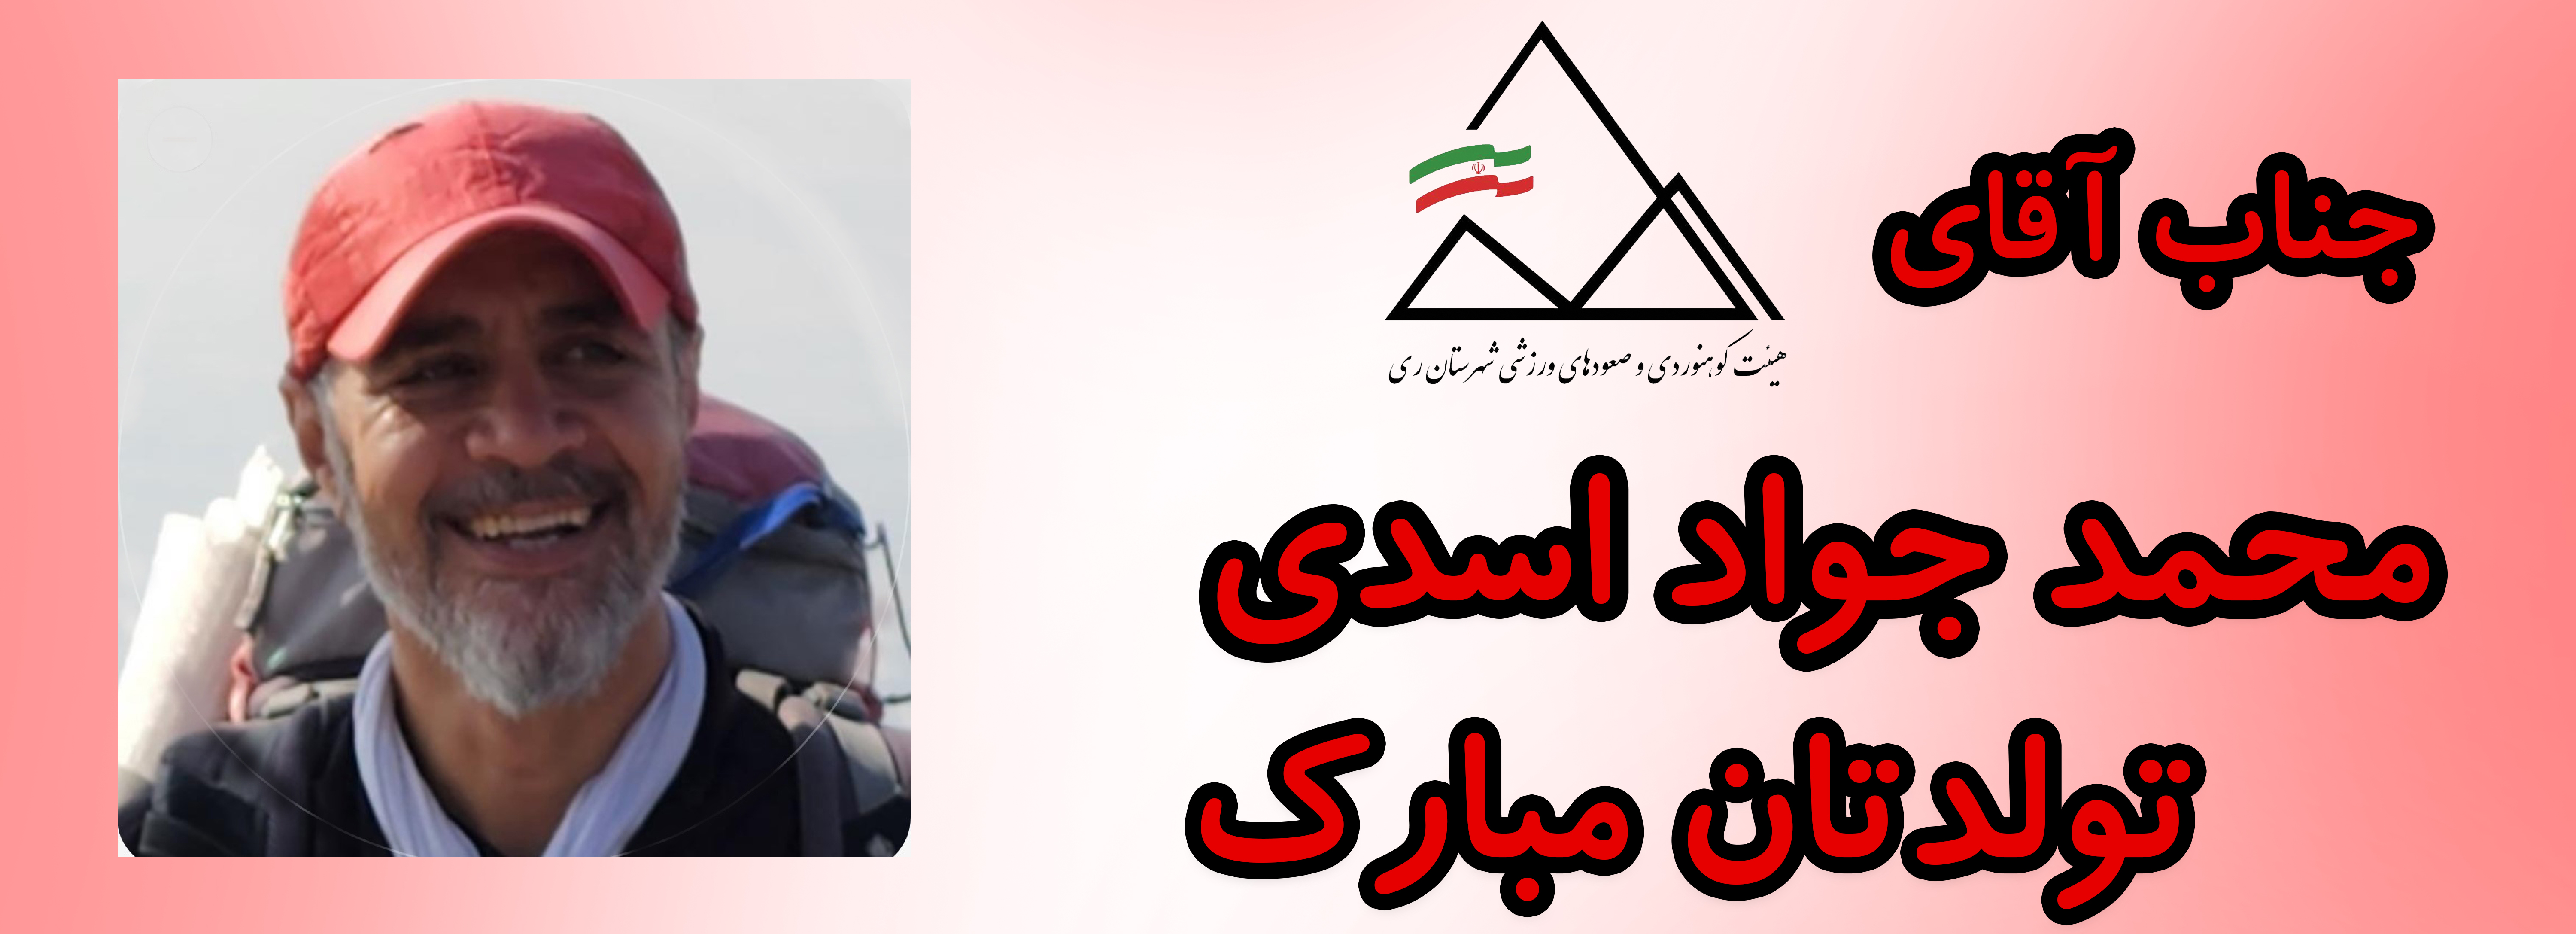 جناب آقای محمد جواد اسدی تولدت مبارک